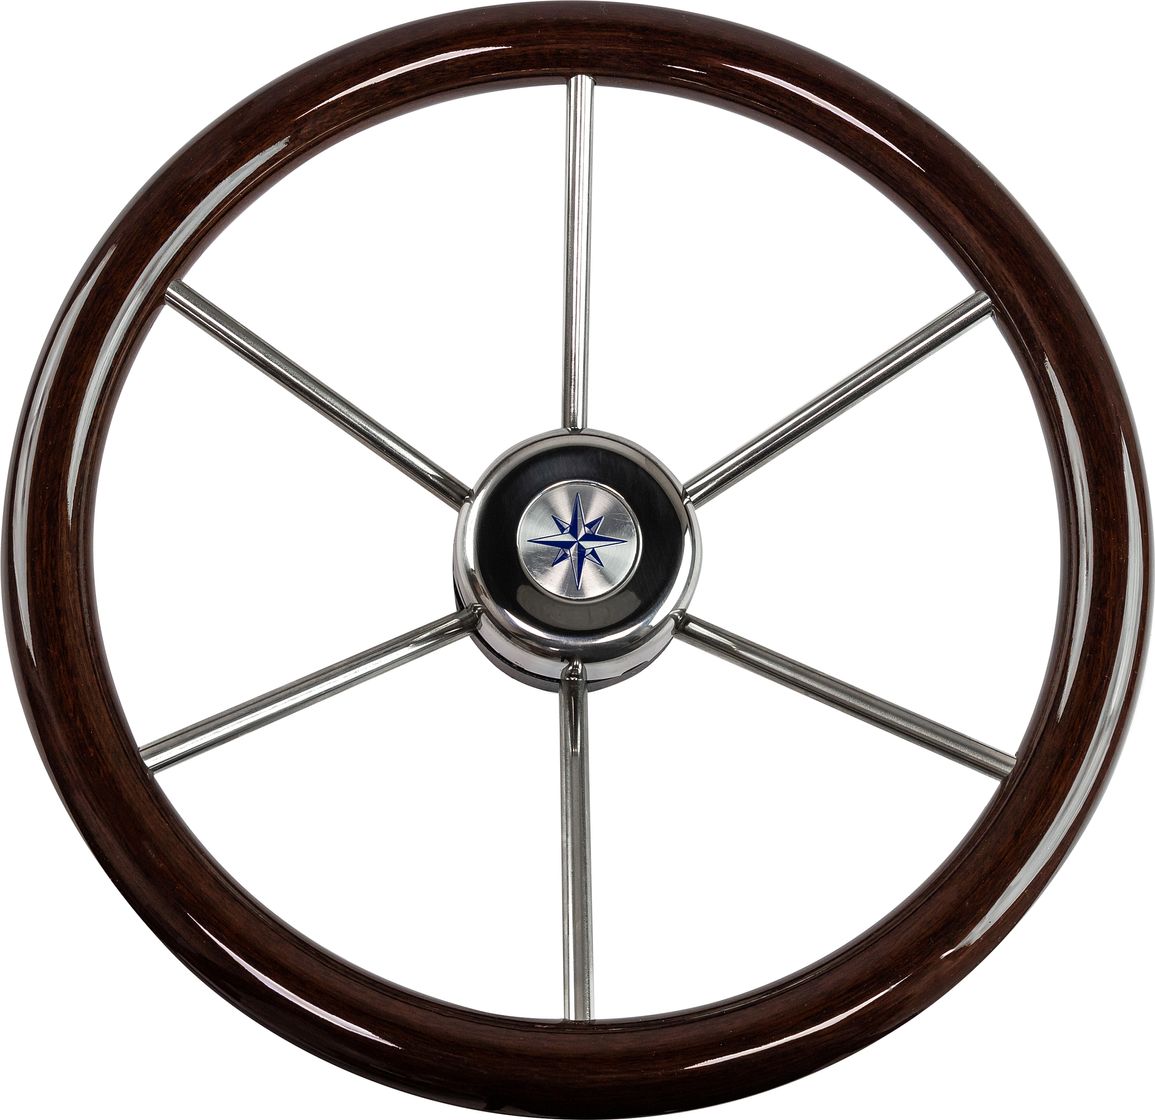 Рулевое колесо LEADER WOOD деревянный обод серебряные спицы д. 390 мм VN7390-33 рулевое колесо leader tanegum обод серебряные спицы д 400 мм vn7400 01